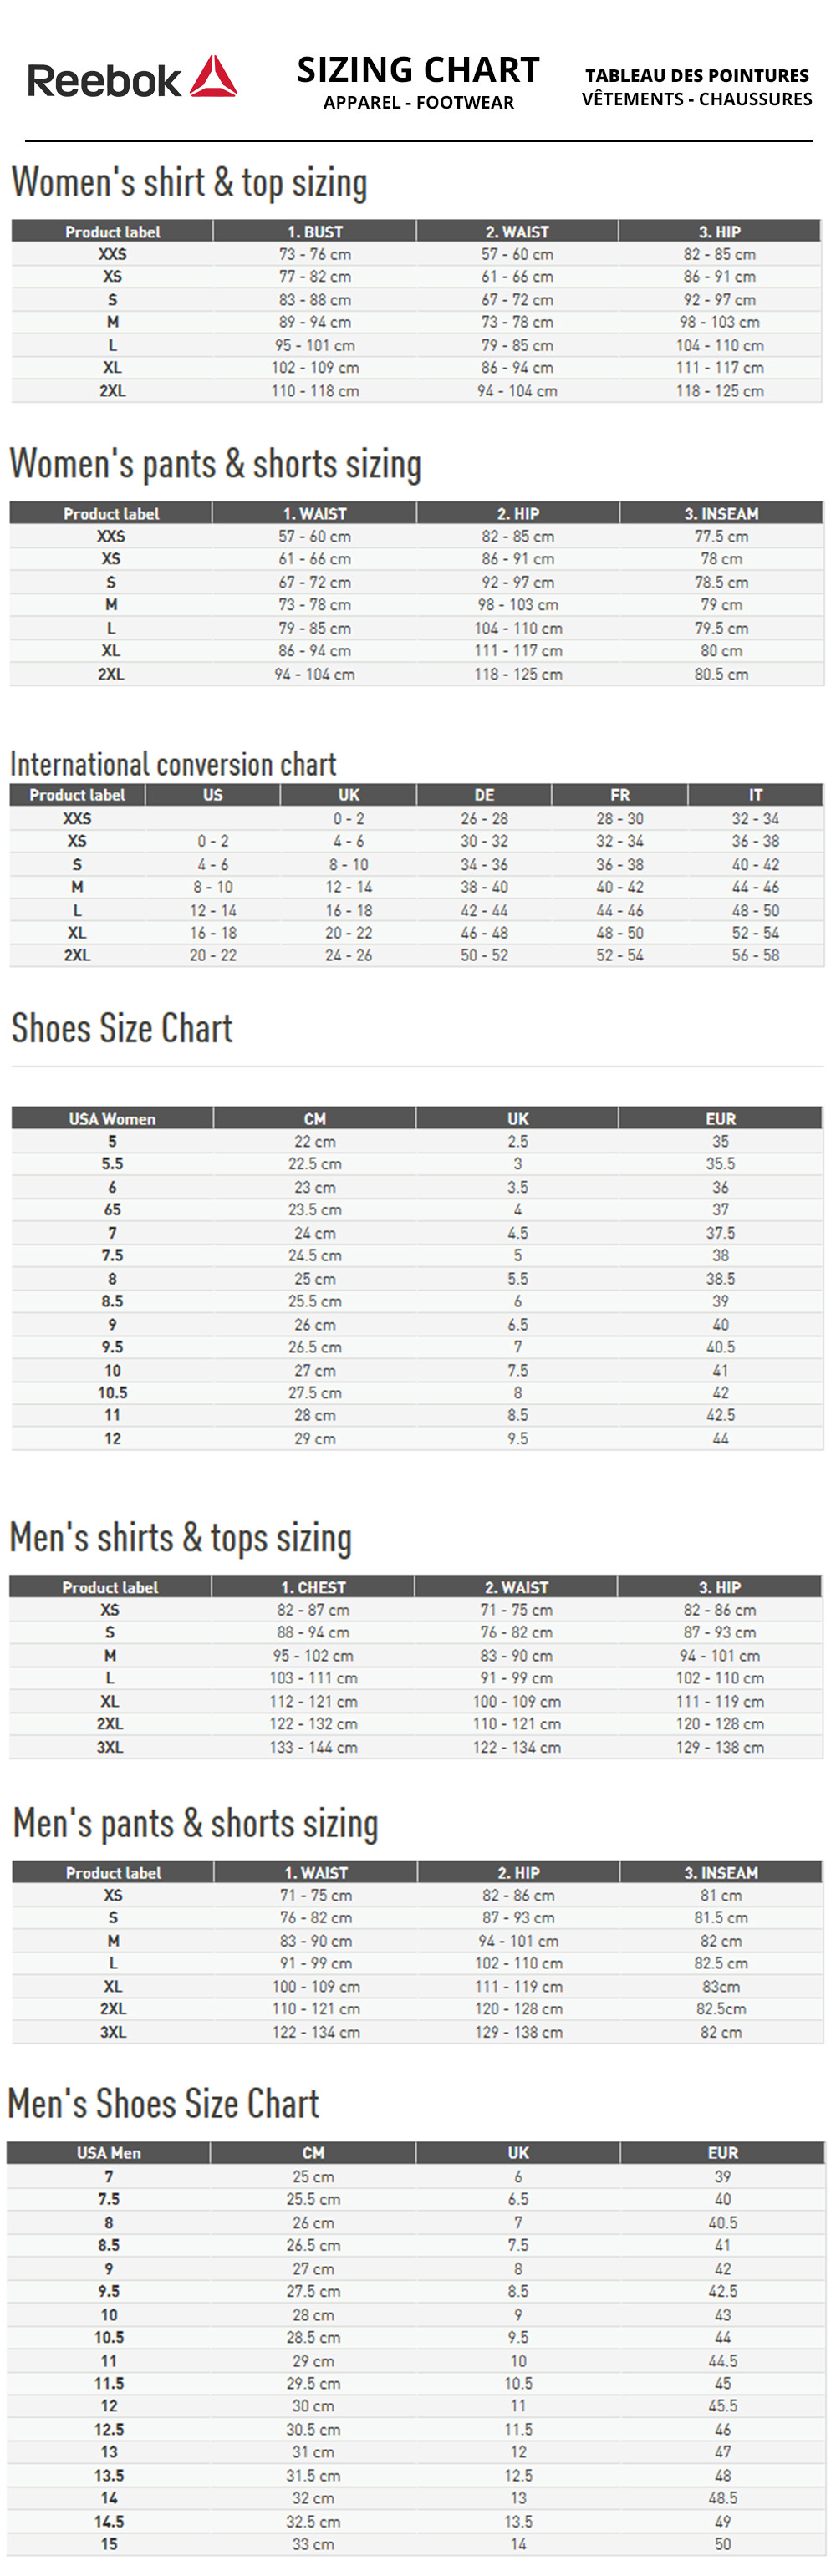 reebok men's size guide